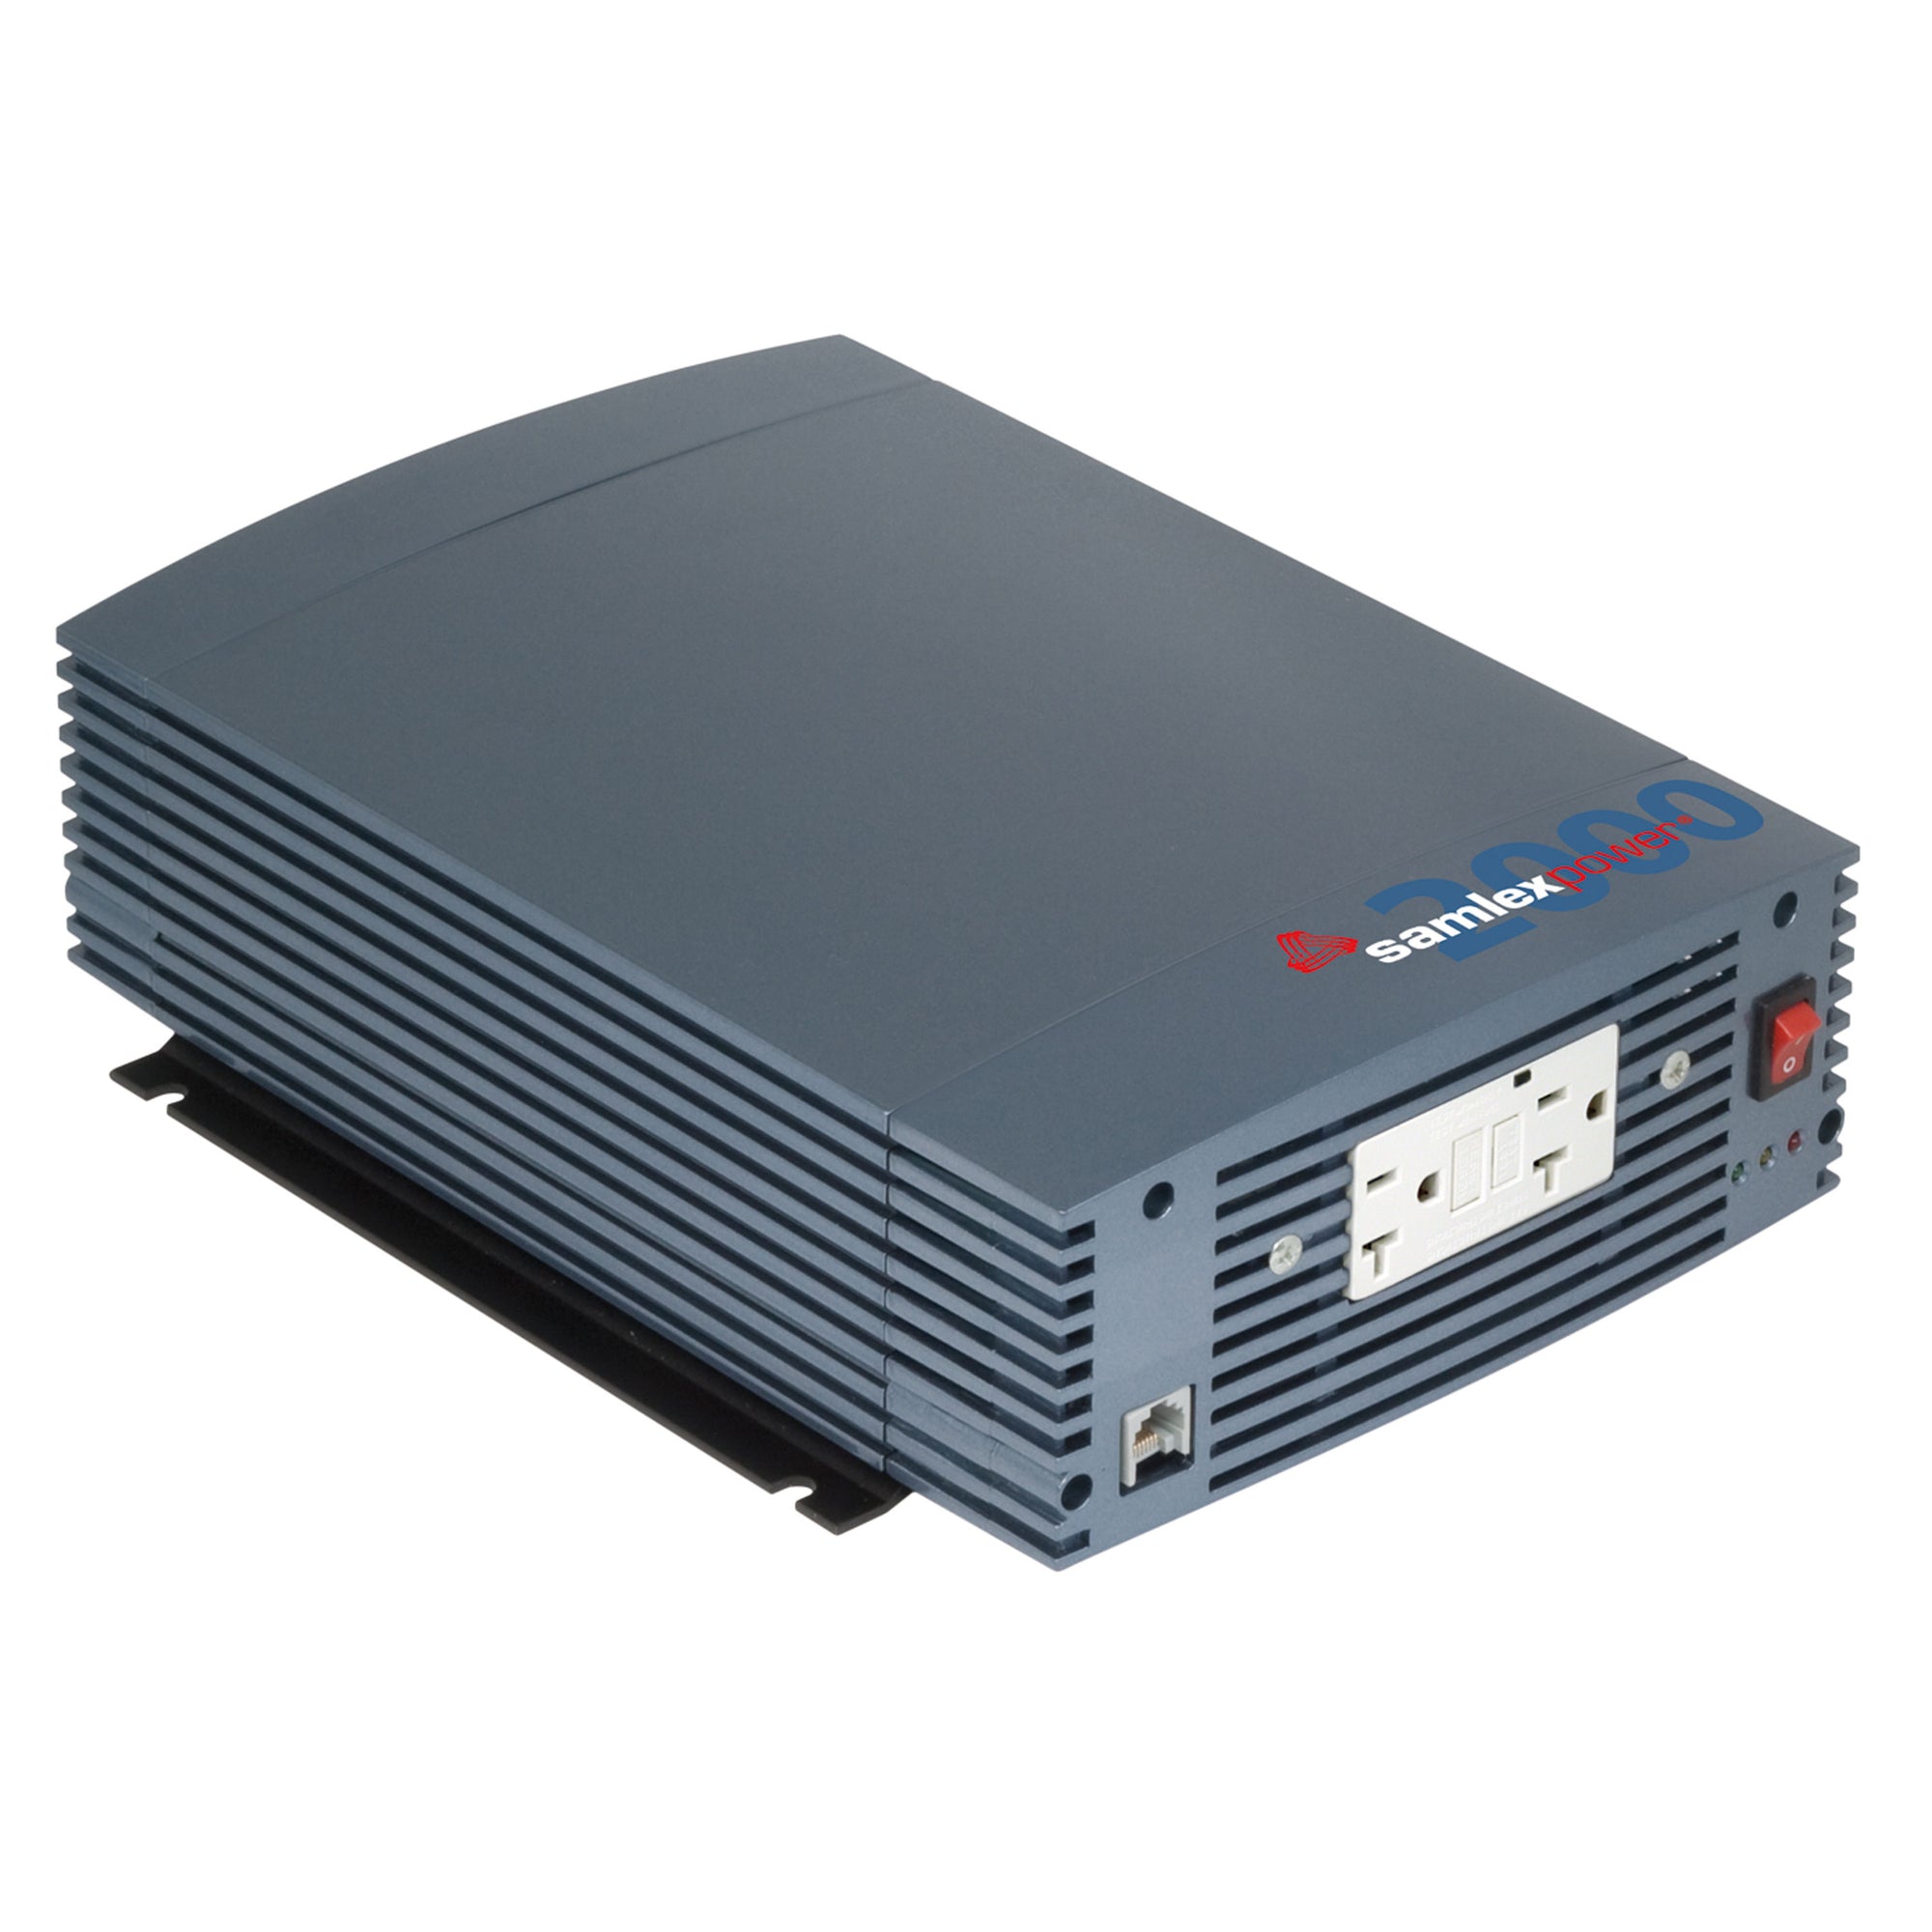 Samlex SSW-600-12A SSW Series Pure Sine Wave Inverter - 600 Watt